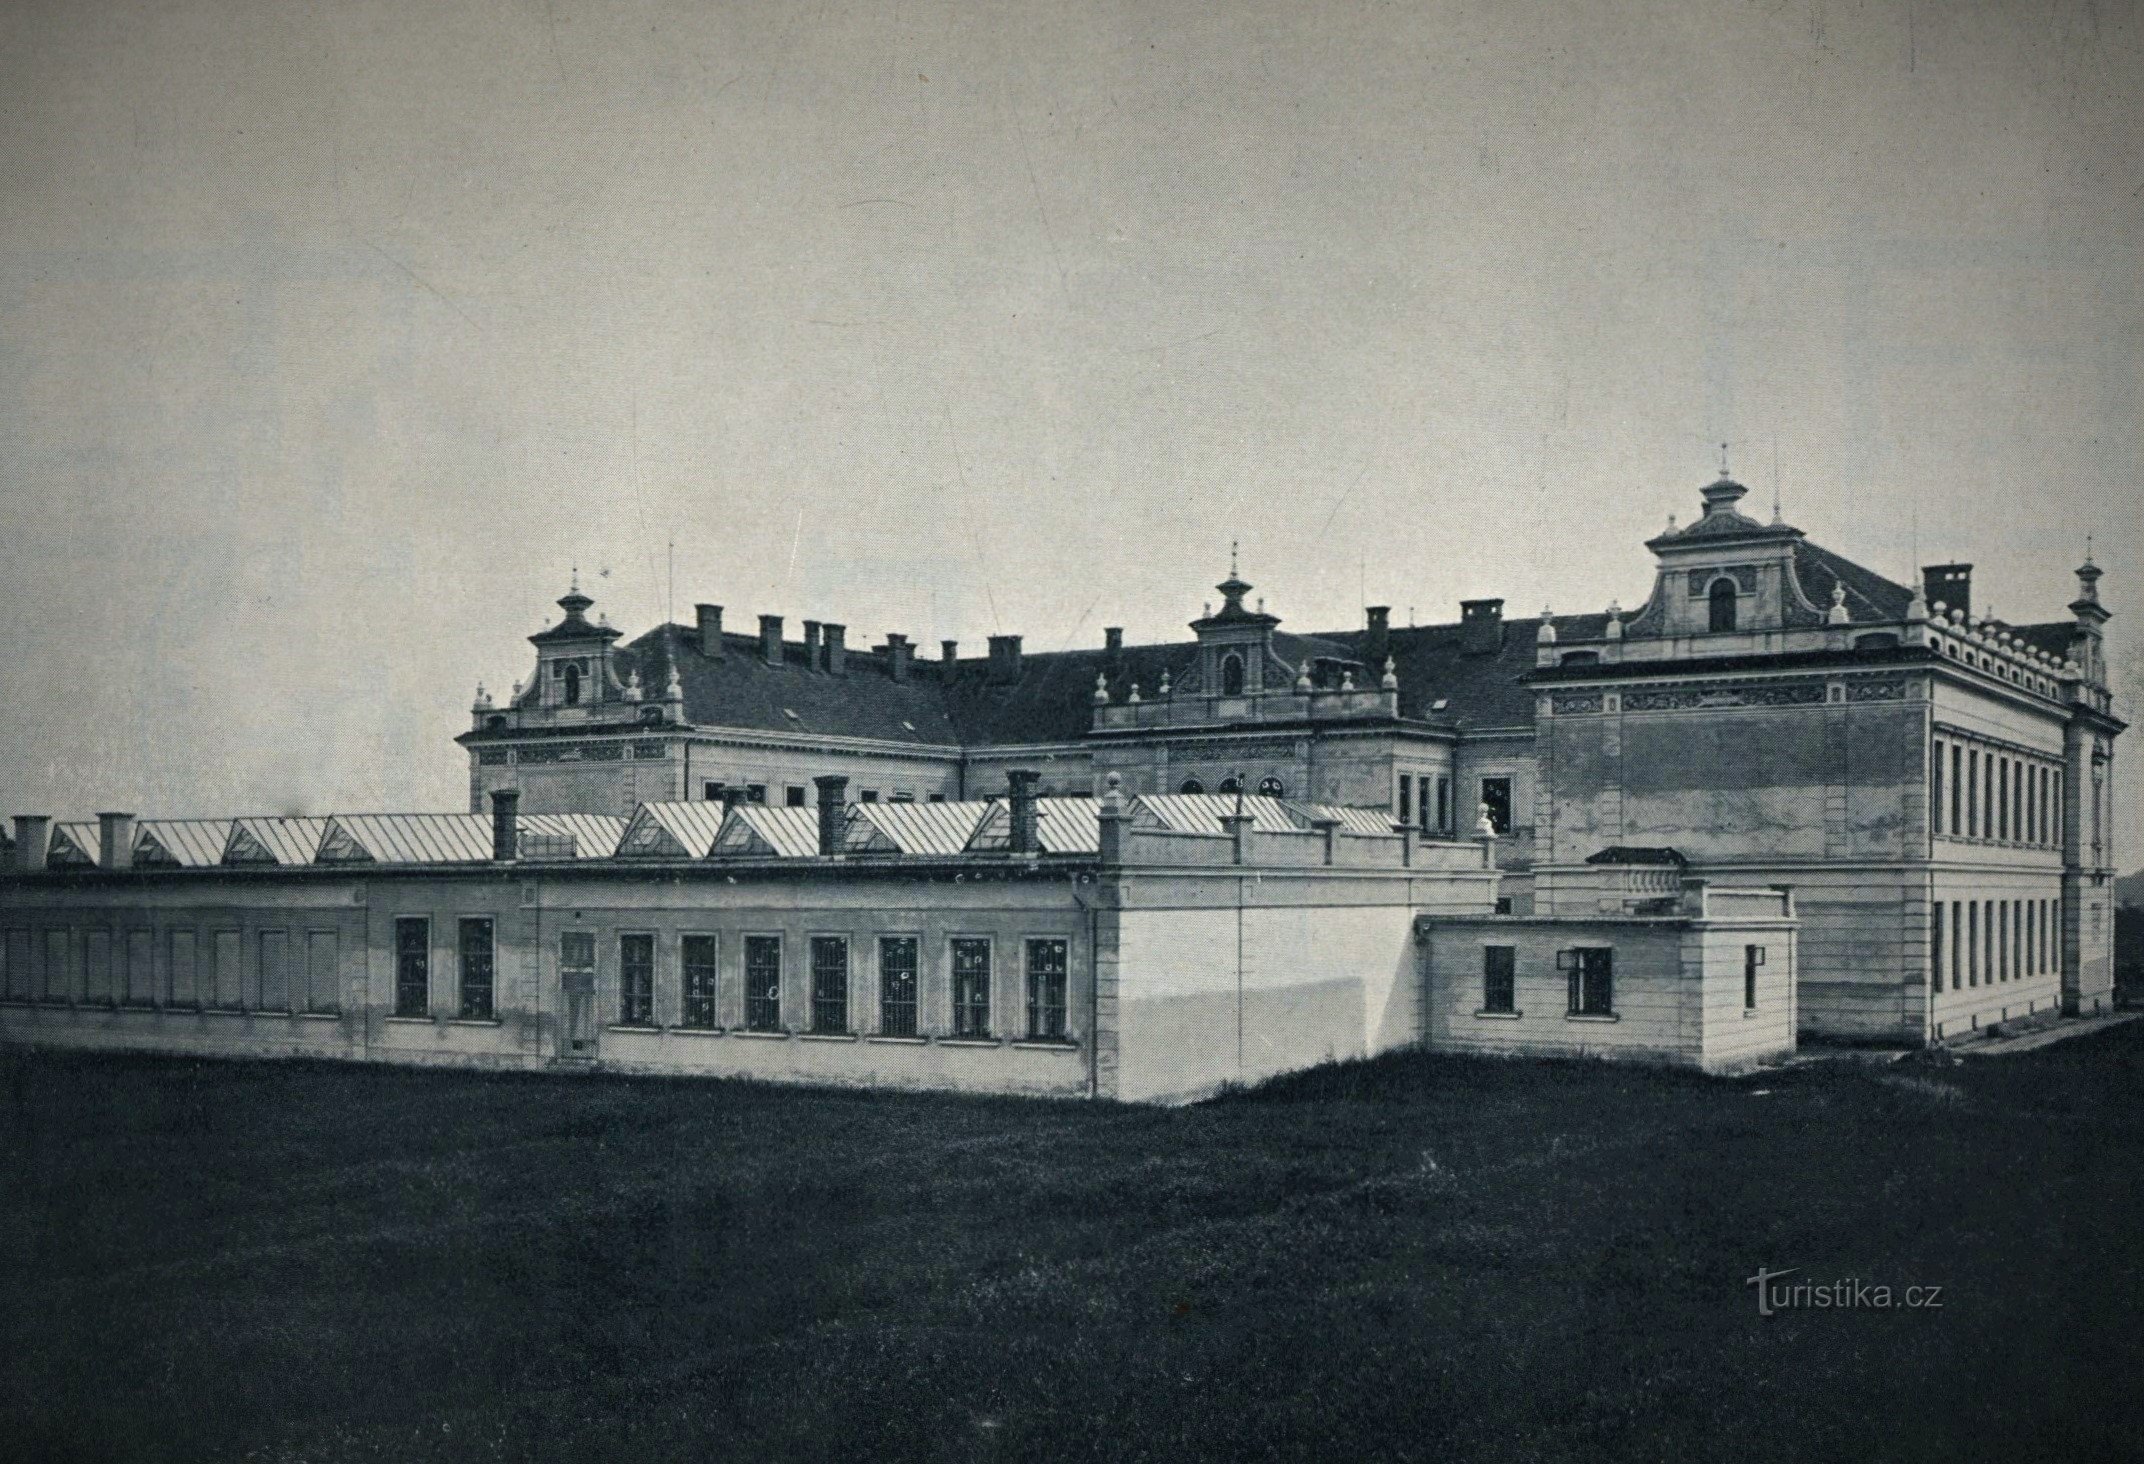 C. k. școală generală de meșteșuguri (Jaroměř, 1904)